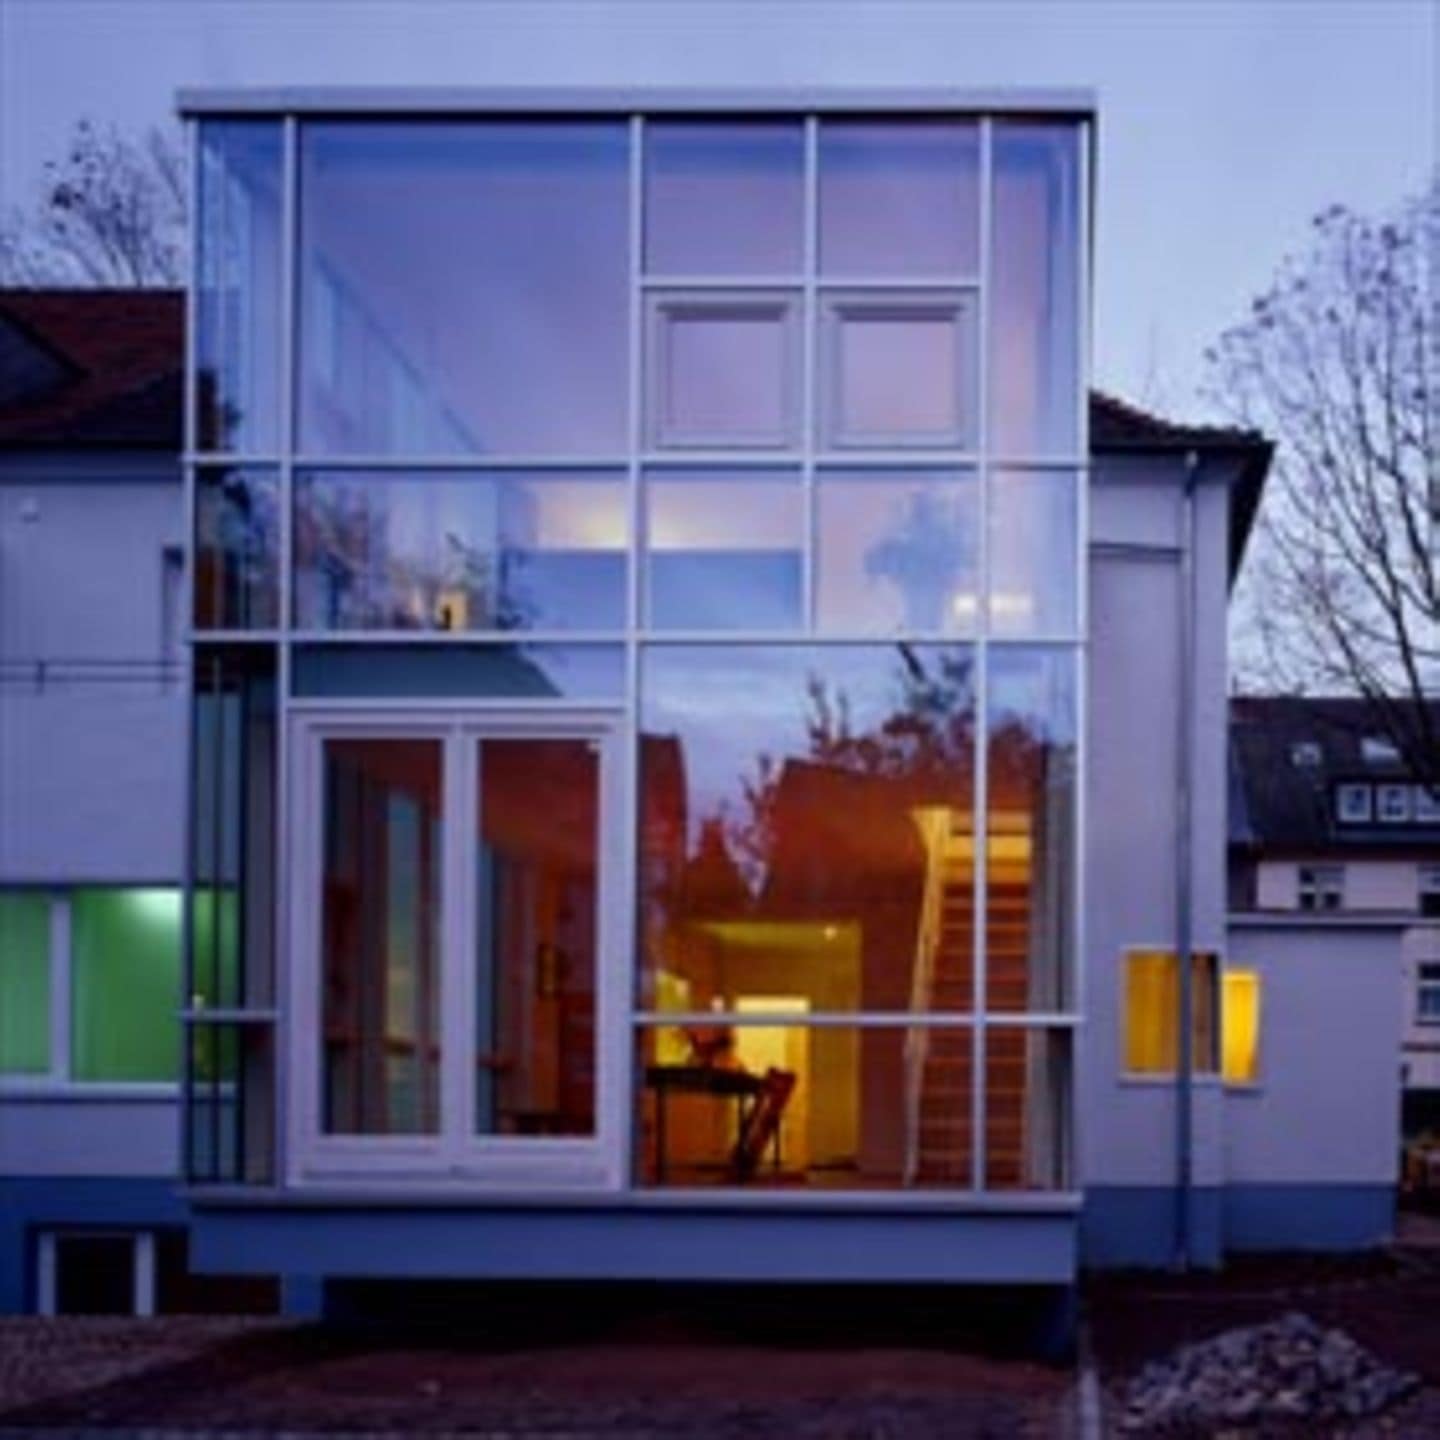 Einen Kubus aus Stahl und Glas fügten die Architekten an ein schlichtes Doppelhaus aus den 30er Jahren in Wattenscheid an. Der sehr konstruktive Charakter des Anbaus betont das Neue.